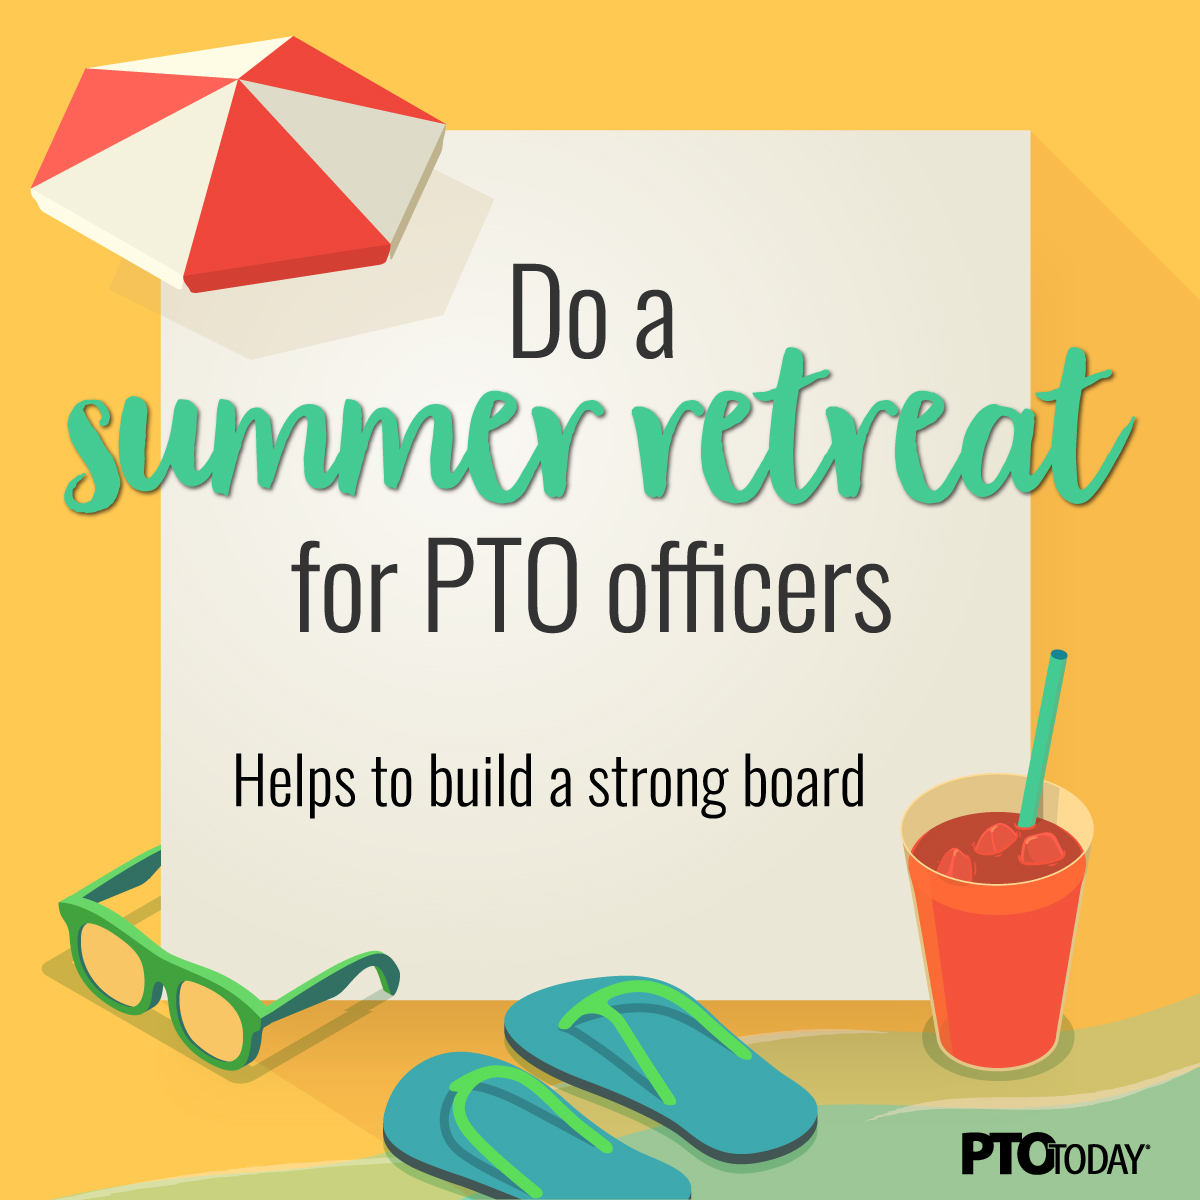 Plan a summer officers retreat